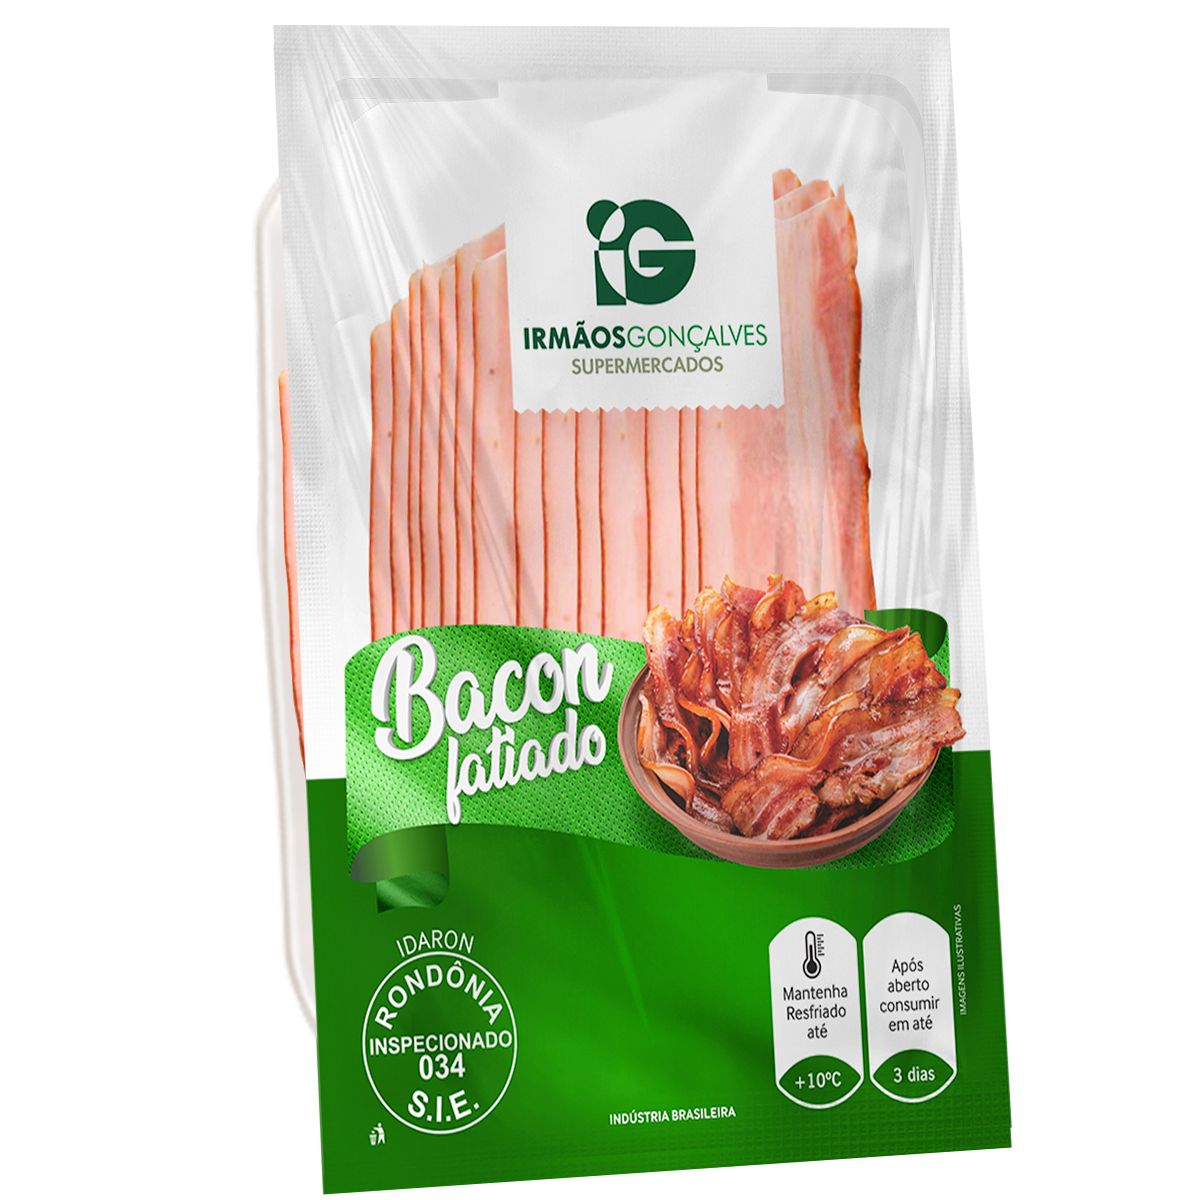 Bacon Seara Fatiado 1 Unid. Aprox.520g image number 0